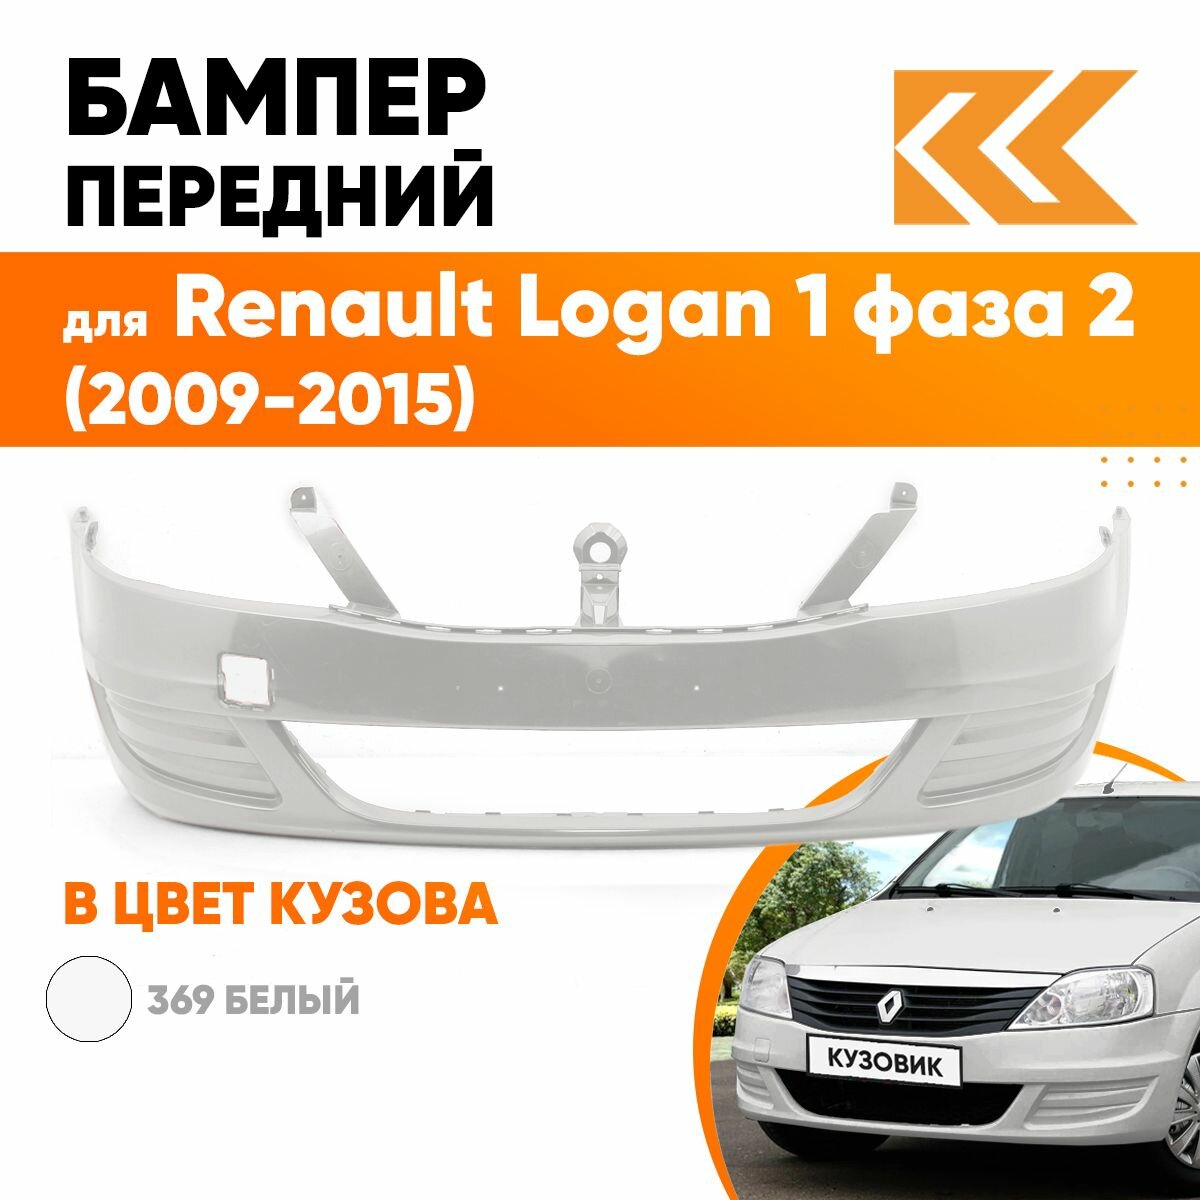 Бампер передний в цвет кузова для Рено Логан Renault Logan 1 фаза 2 (2009-2015) без отверстия под птф 369 - BLANC GLACIER - Белый